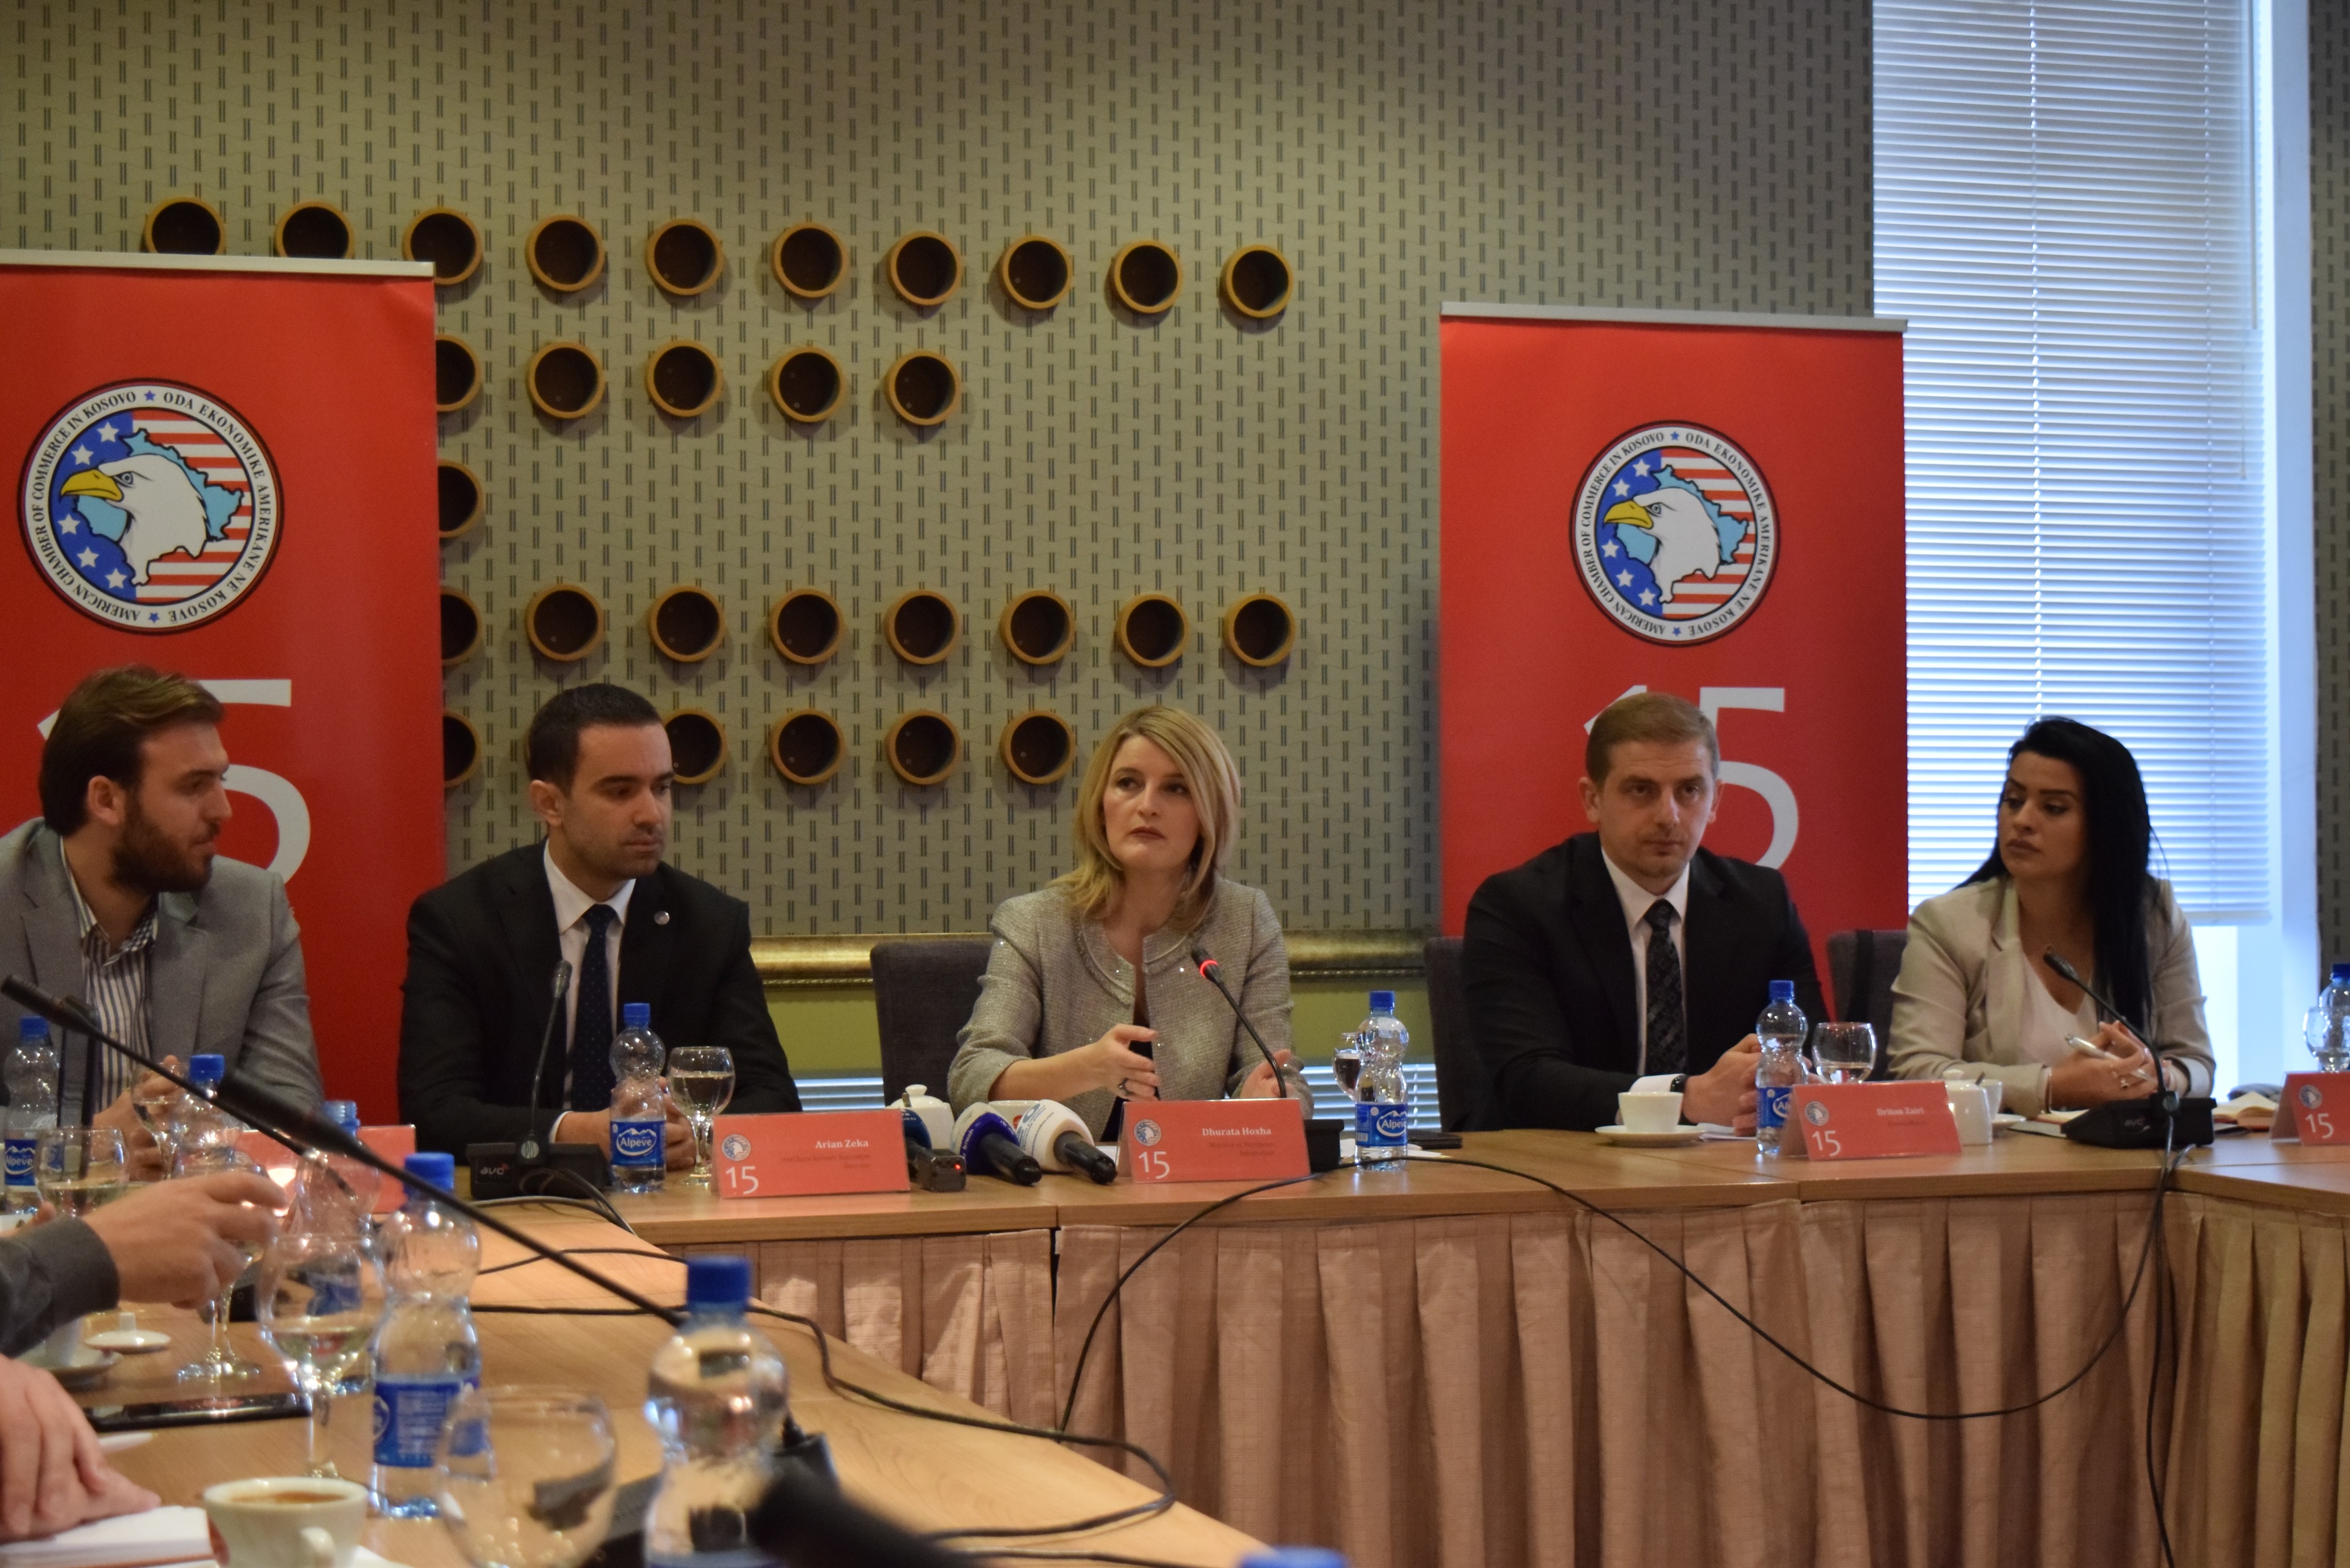 Bizneset kosovare ballafaqohen me sfida në shfrytëzimin e përfitimeve të MSA-së